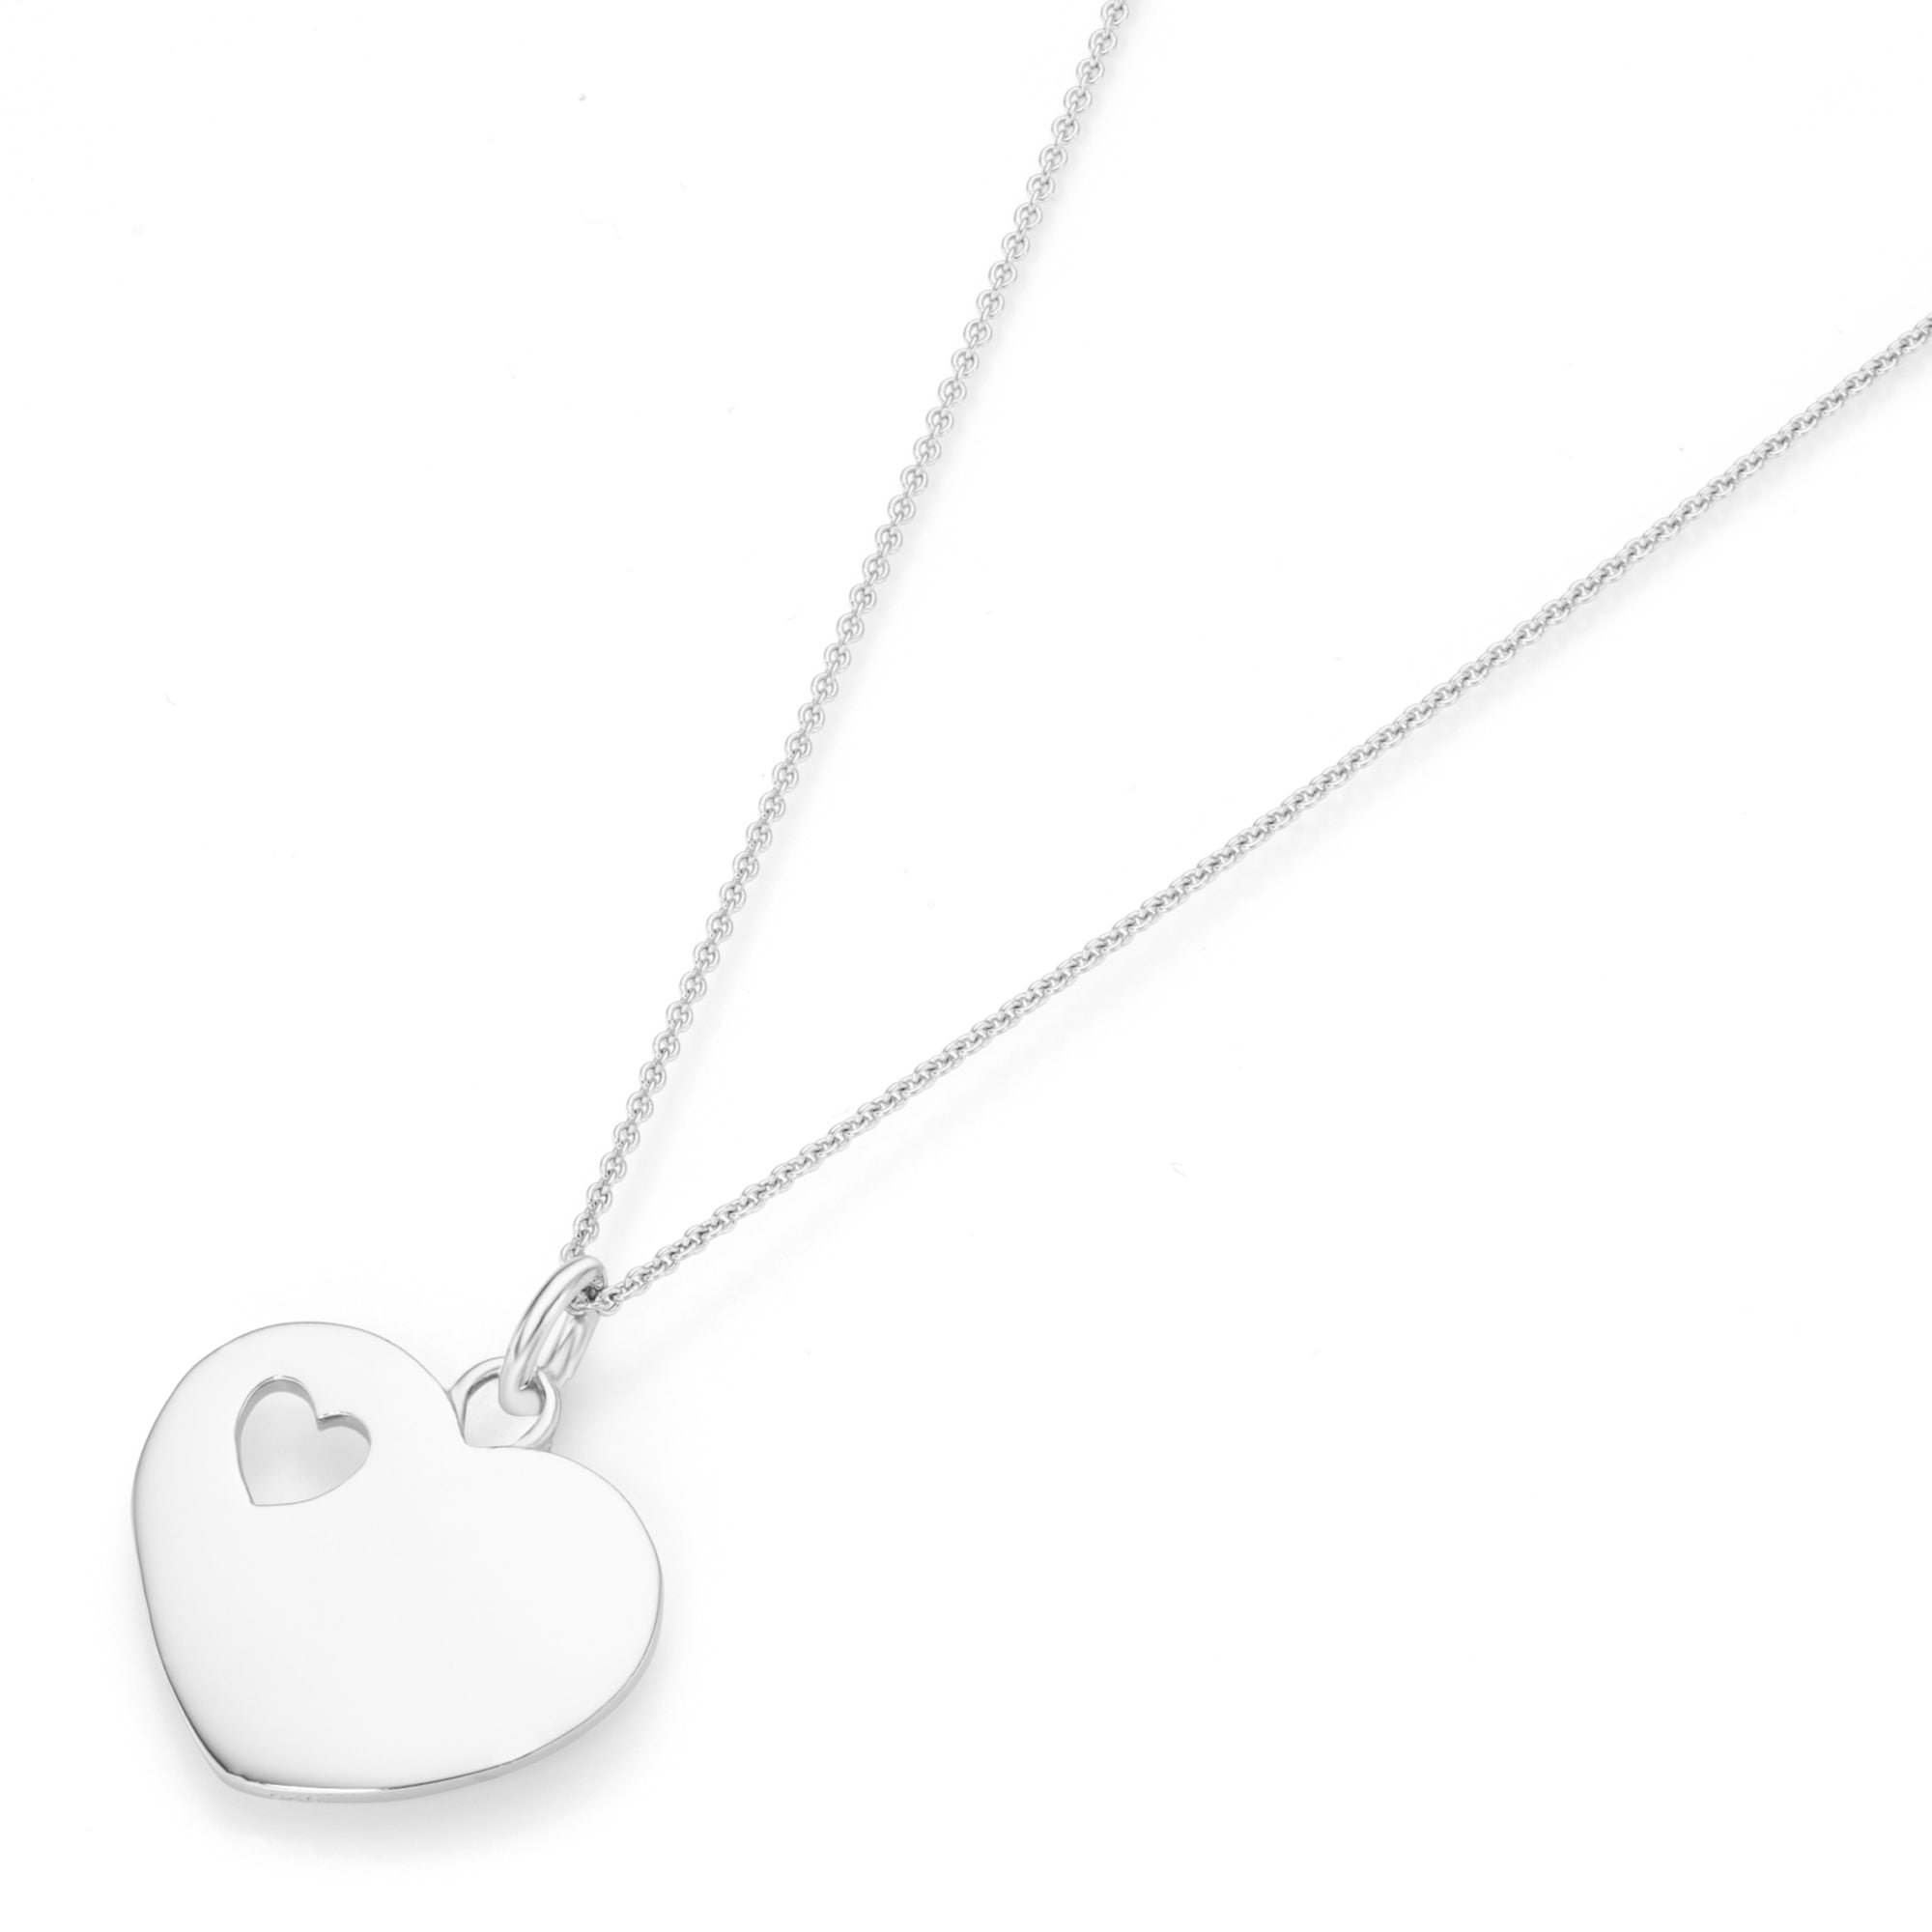 Smart Jewel Herzkette »Kette Herz mit kleinem durchbrochenen Herz, Silber 925«